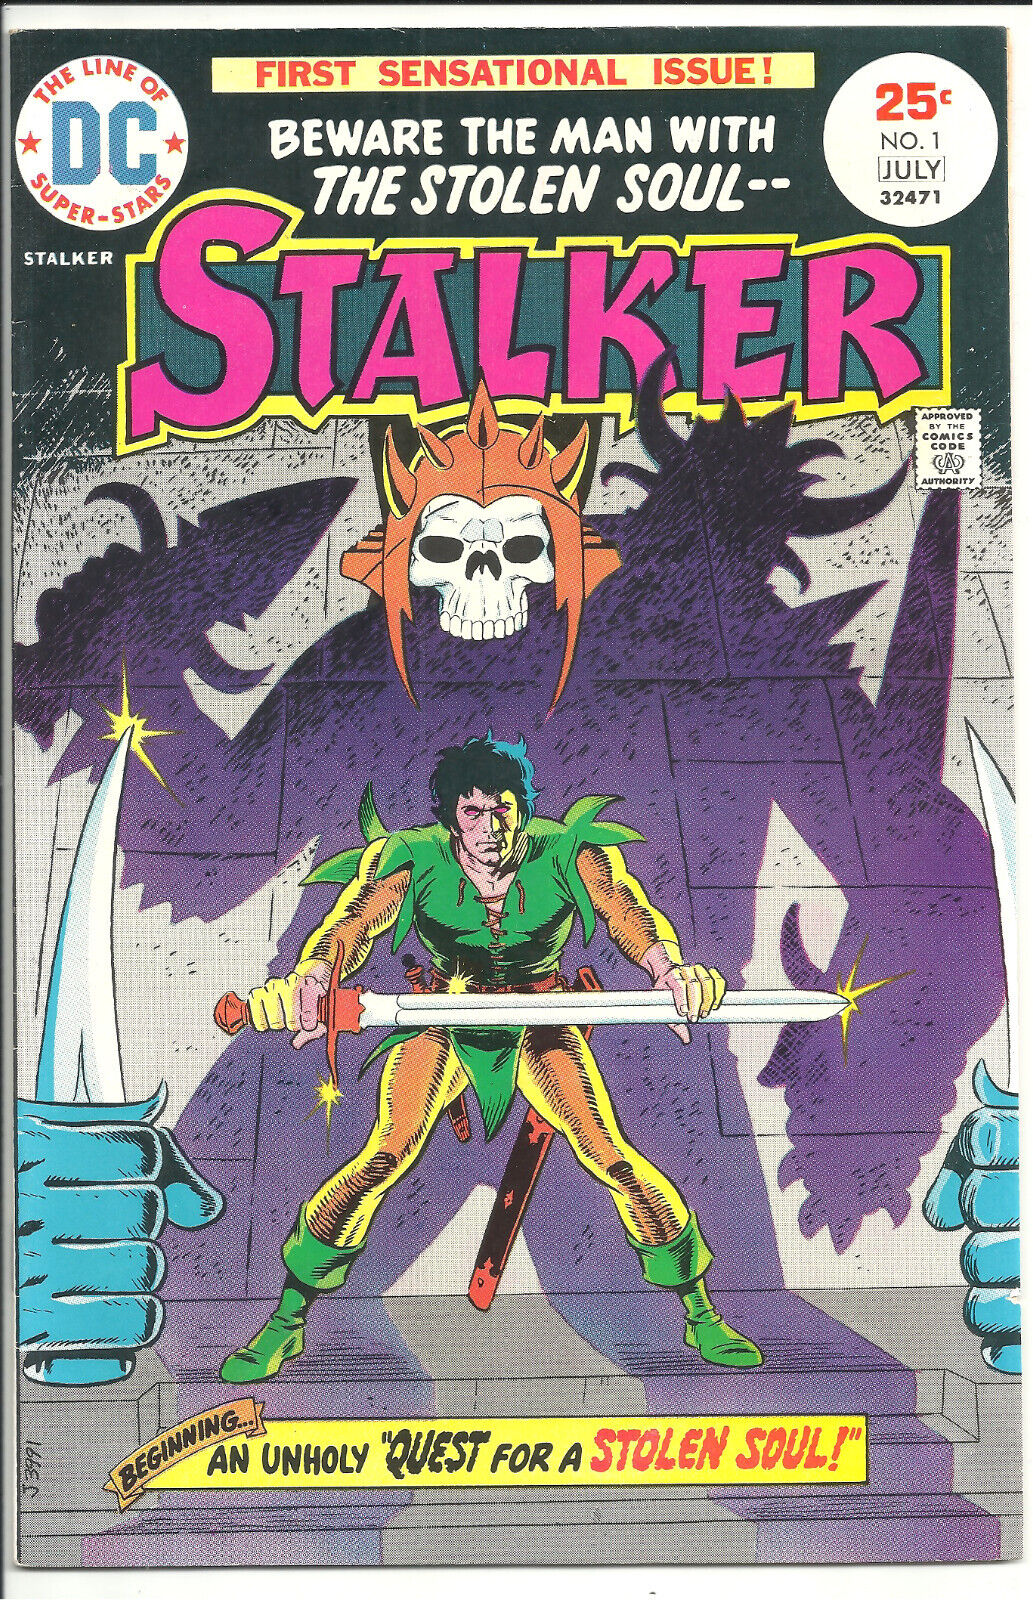 STALKER #1 - DC Comics 1975 - First Appearance Origin Stalker - Steve Ditko Art